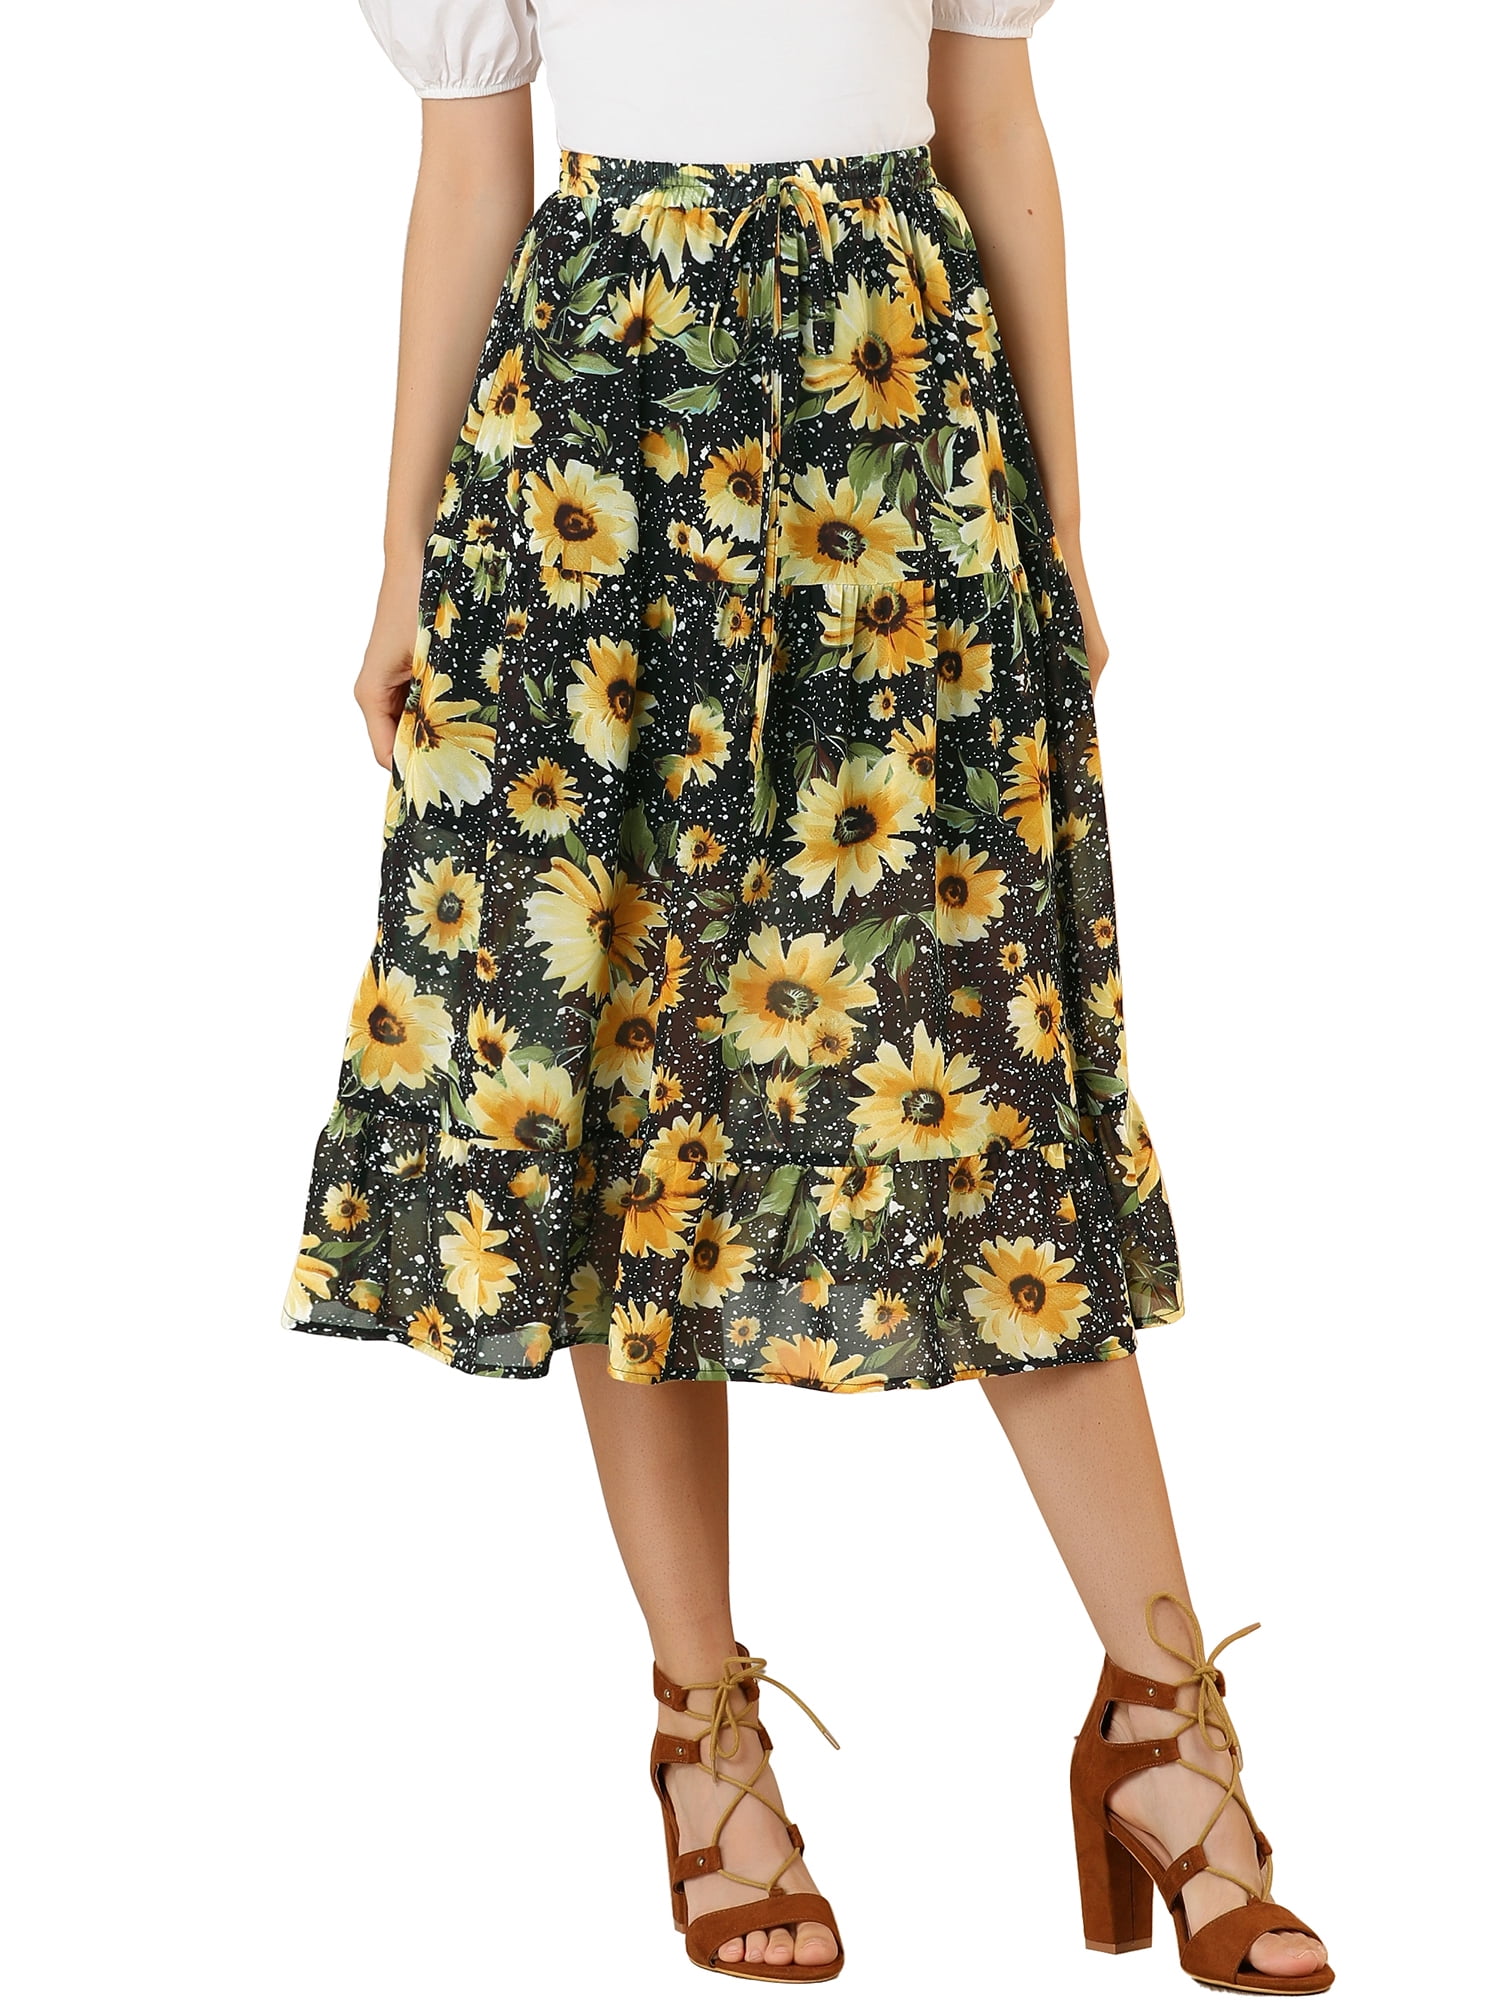 Allegra Women's Floral Sunflower Tiered Chiffon Swing A-line Skirt - Walmart.com